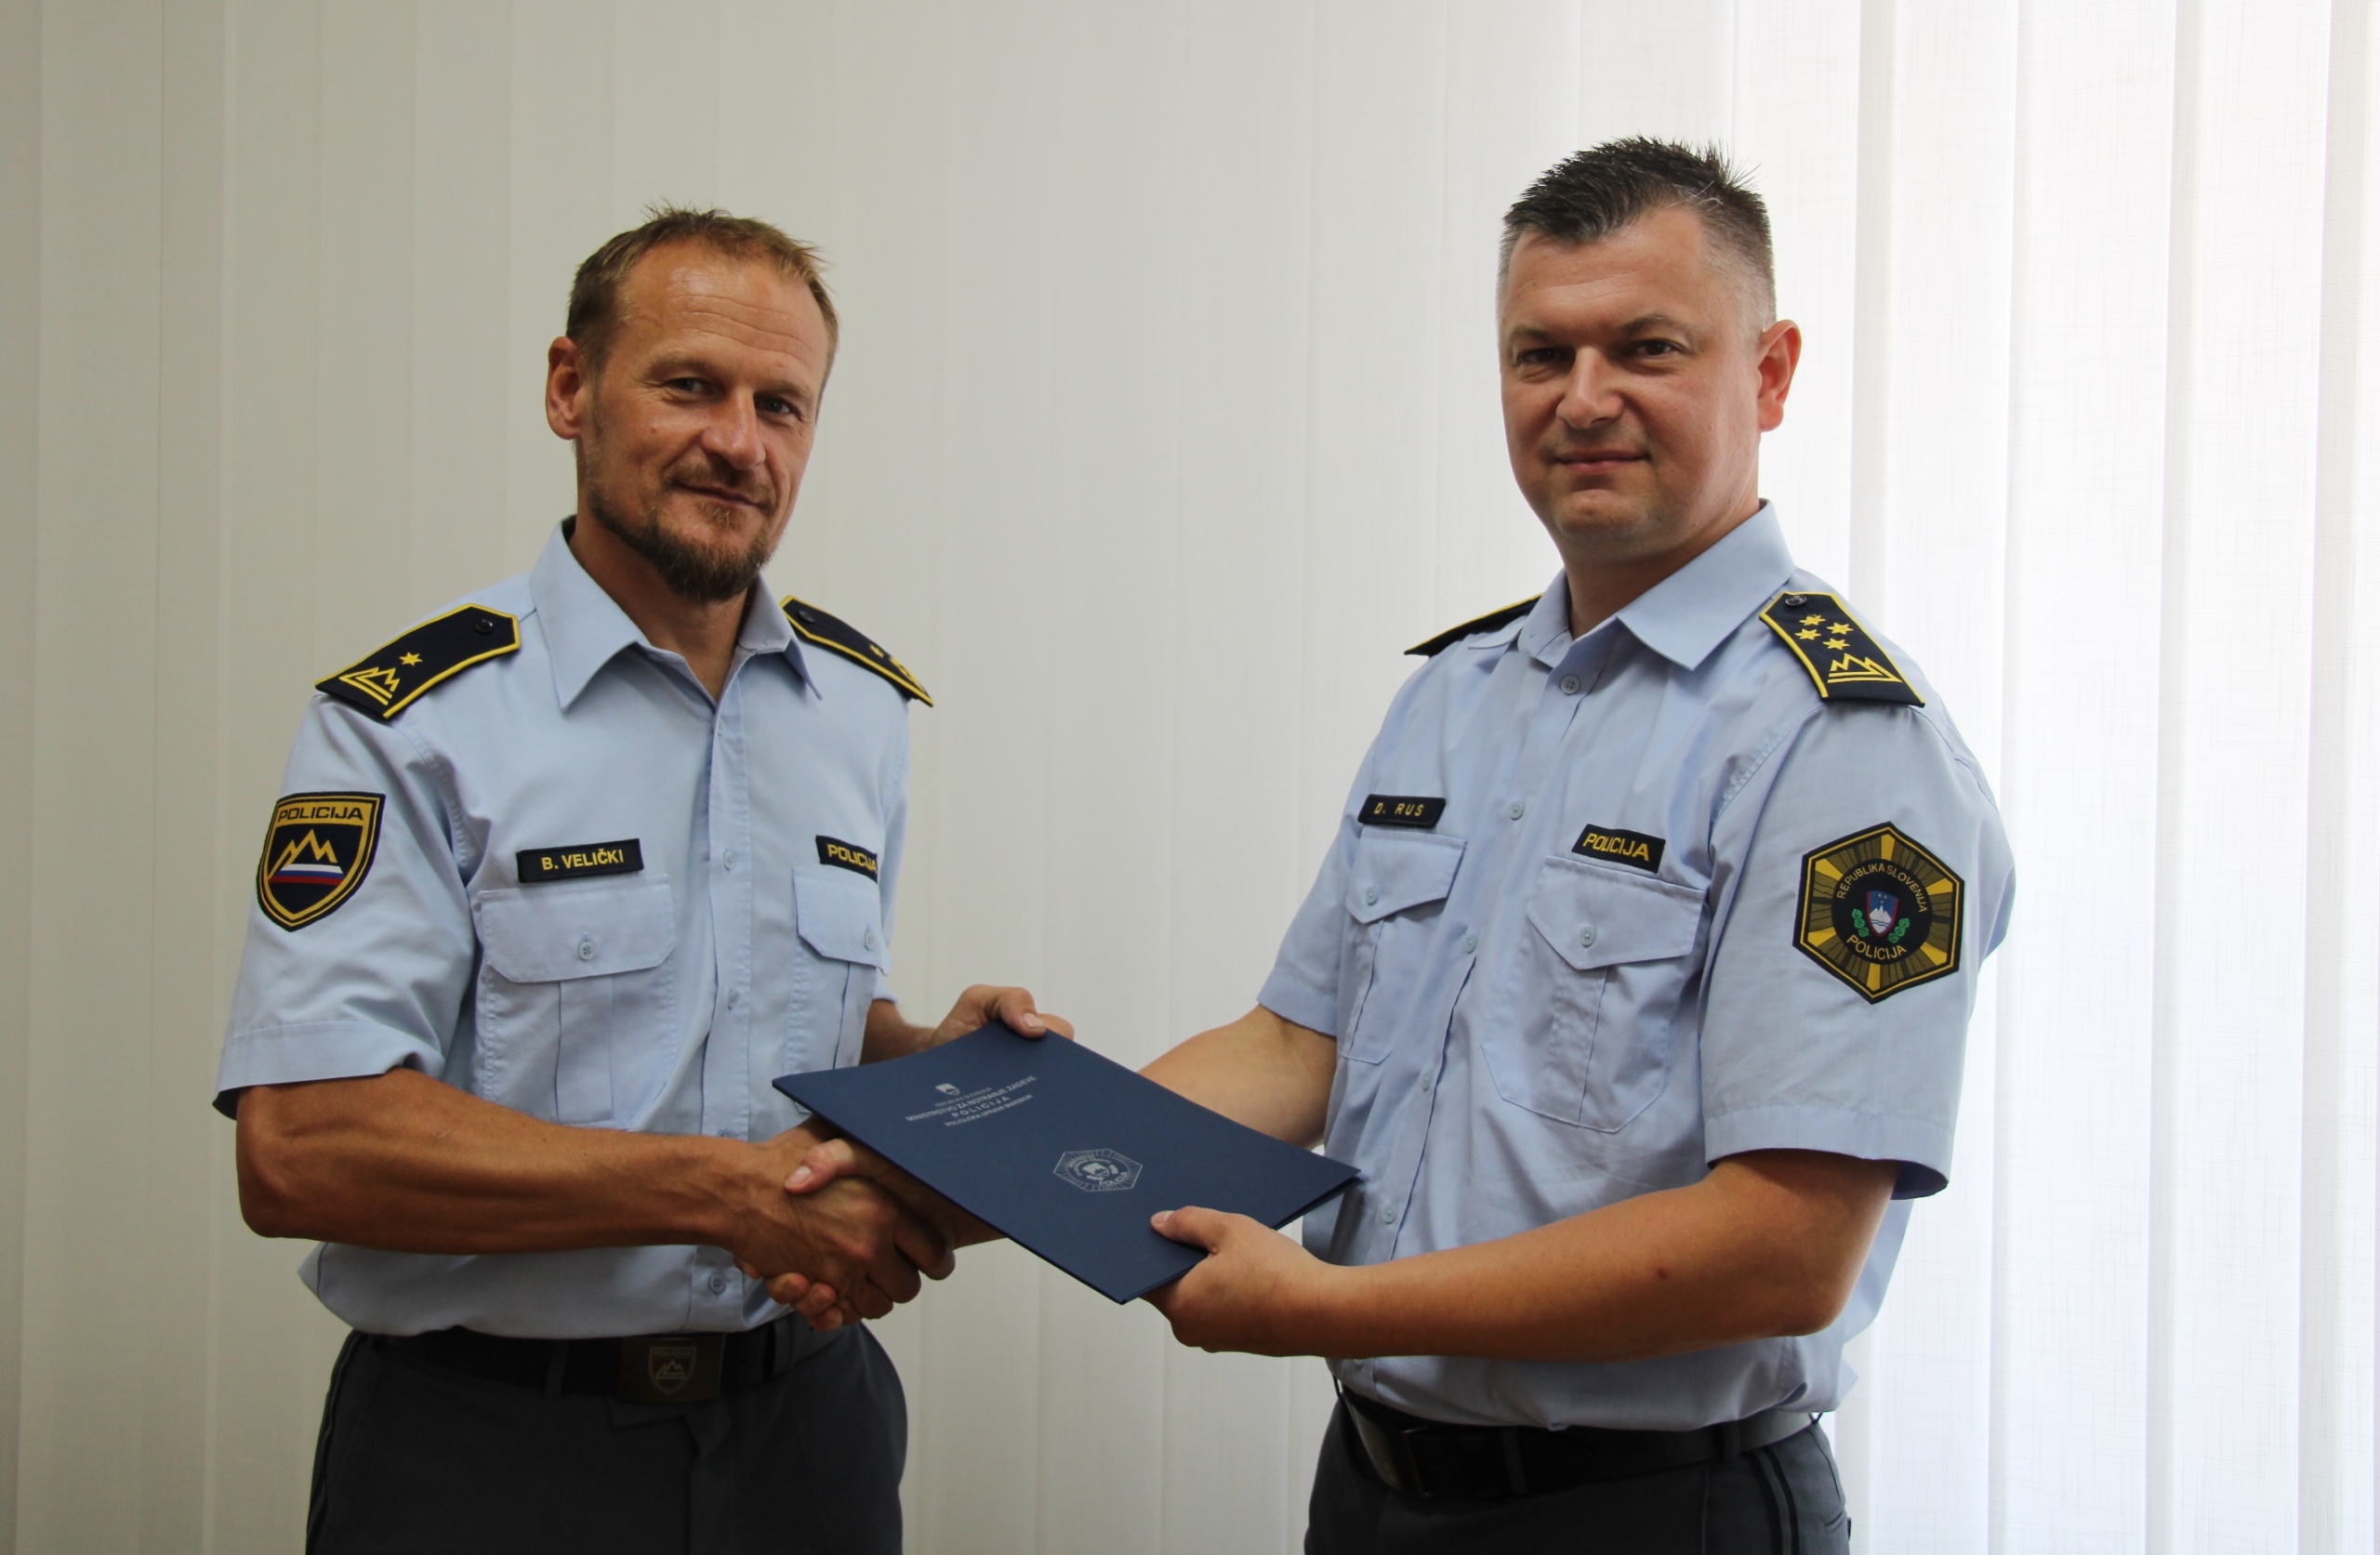 Mariborski policisti imajo novega šefa